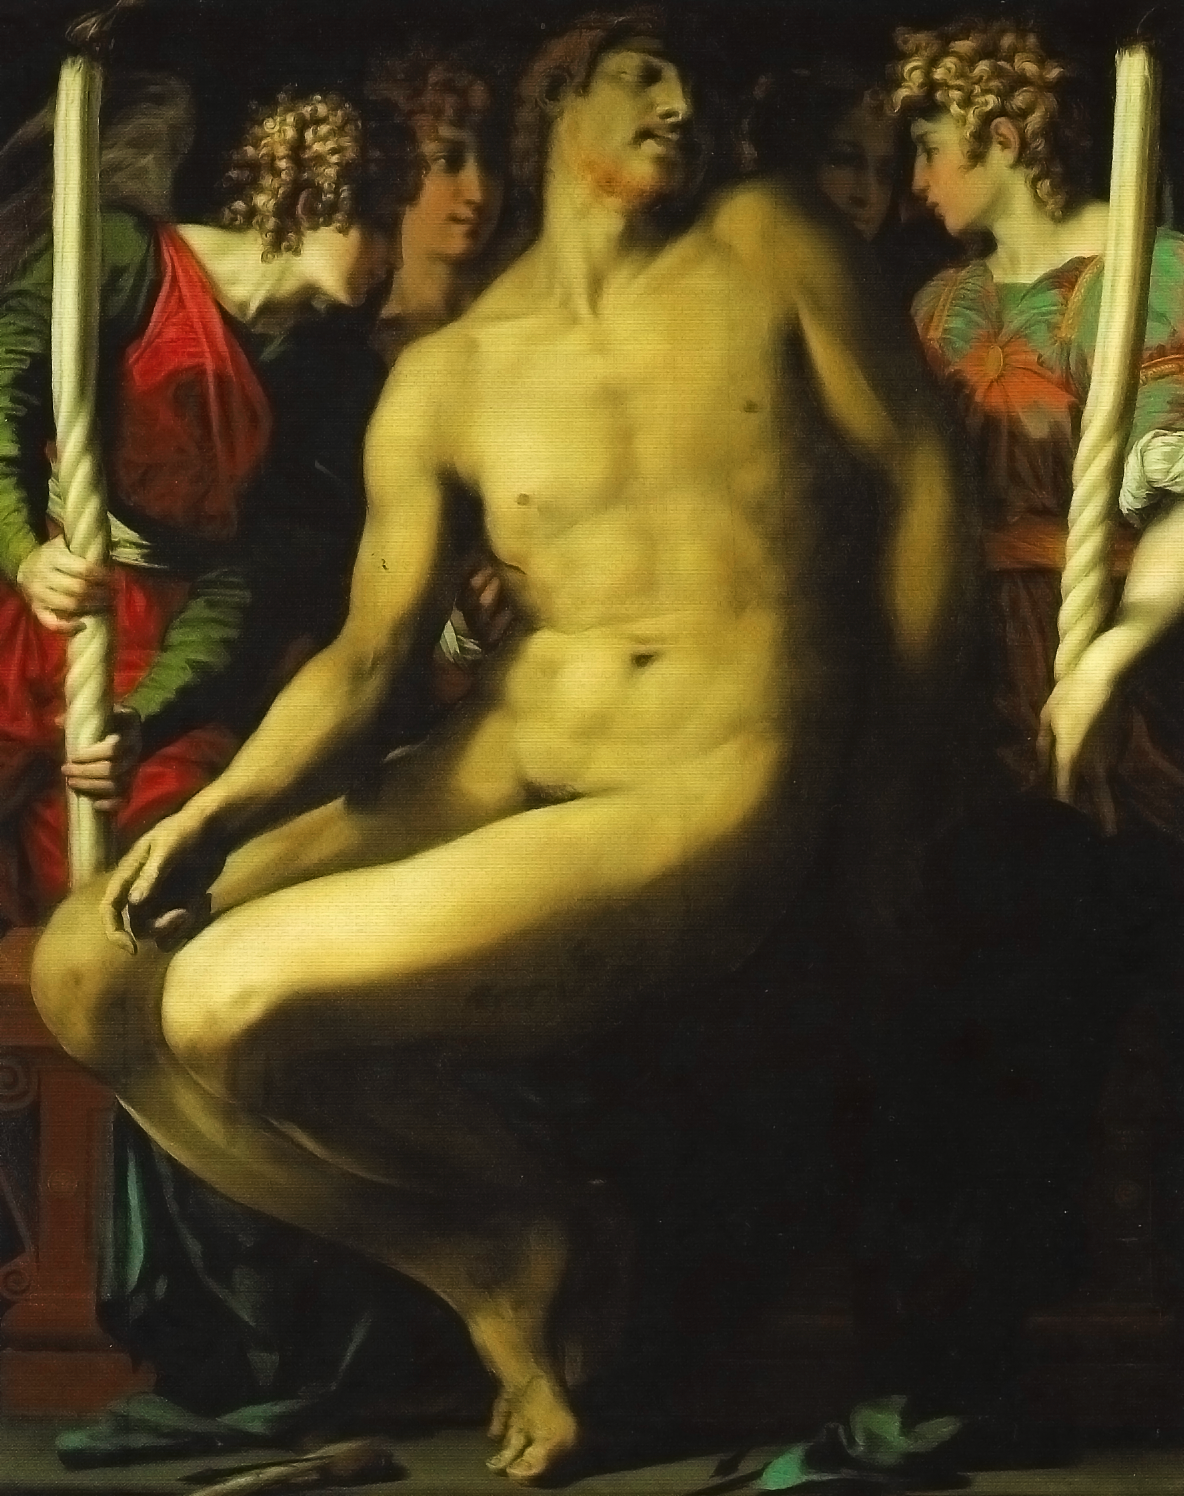 Le Christ mort (1524-1527)